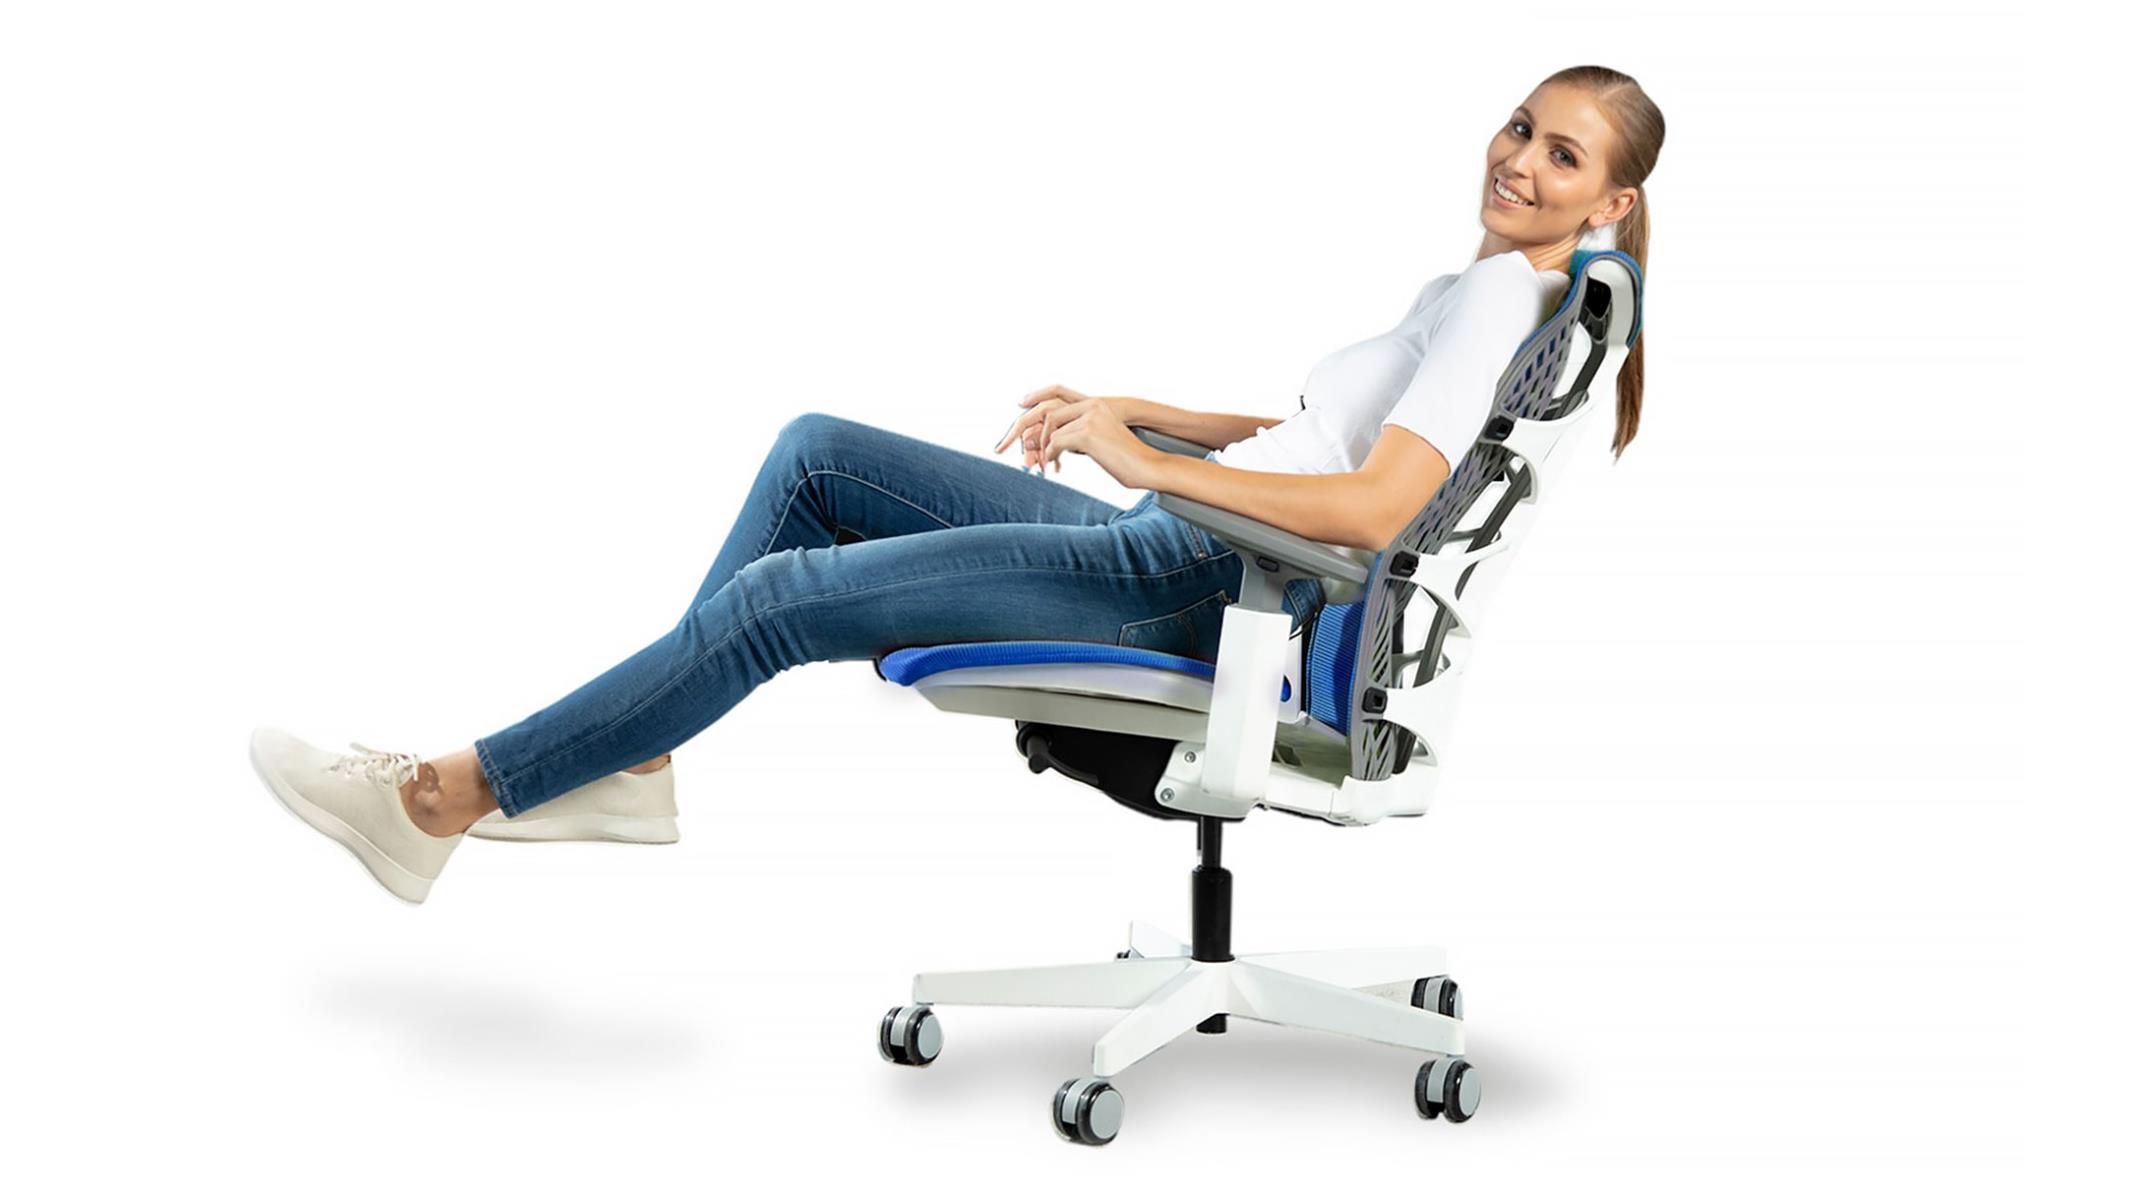 Autonomous Kinn Chair Review Ergonomic Unique Materials And Style Hothardware